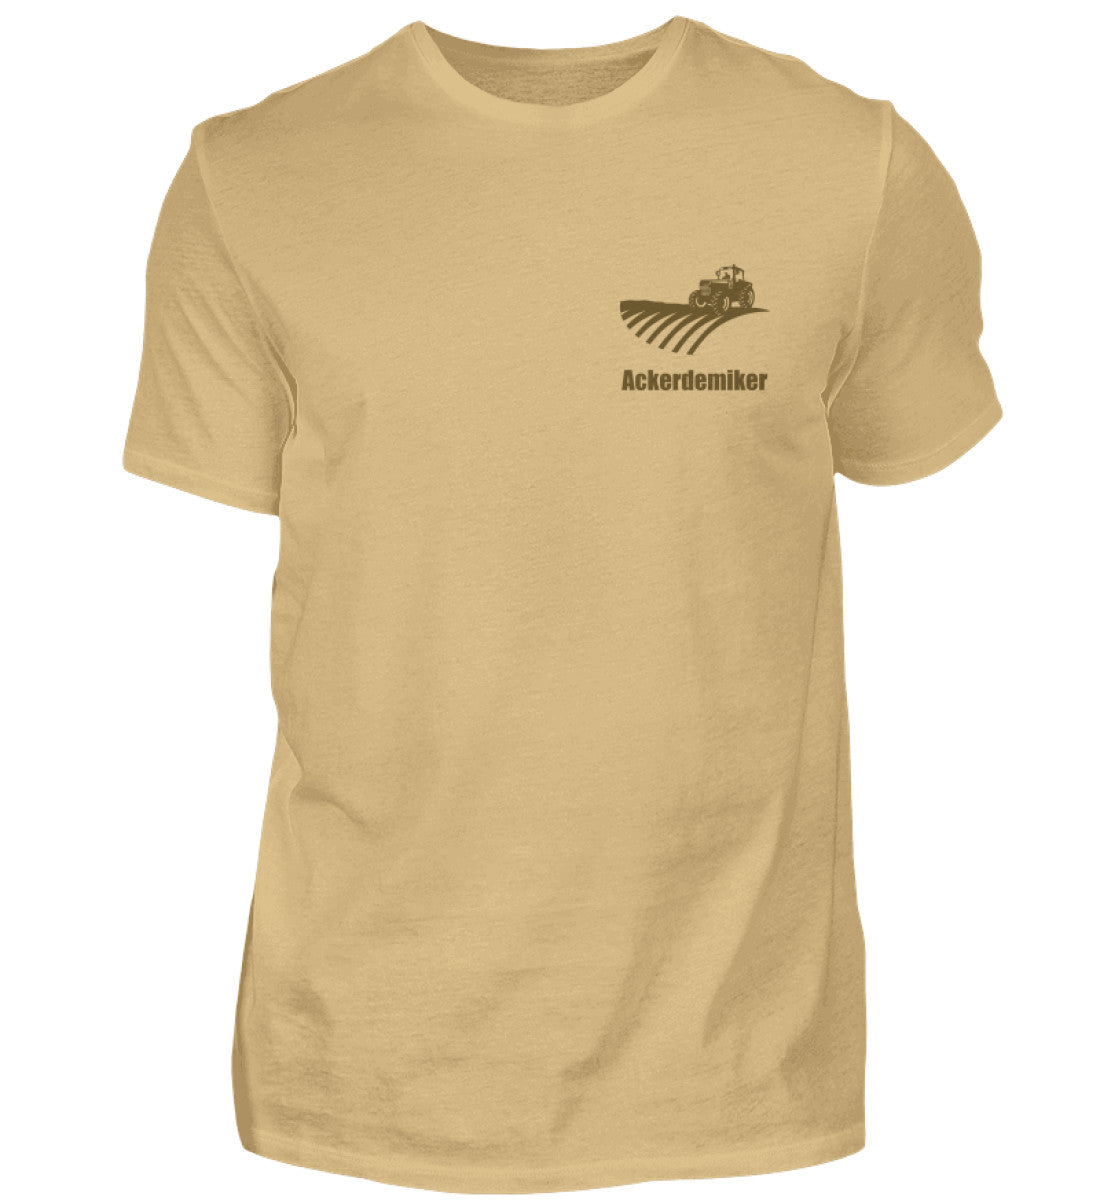 Ackerdemiker (Brusttaschenmotiv) - Unisex Shirt